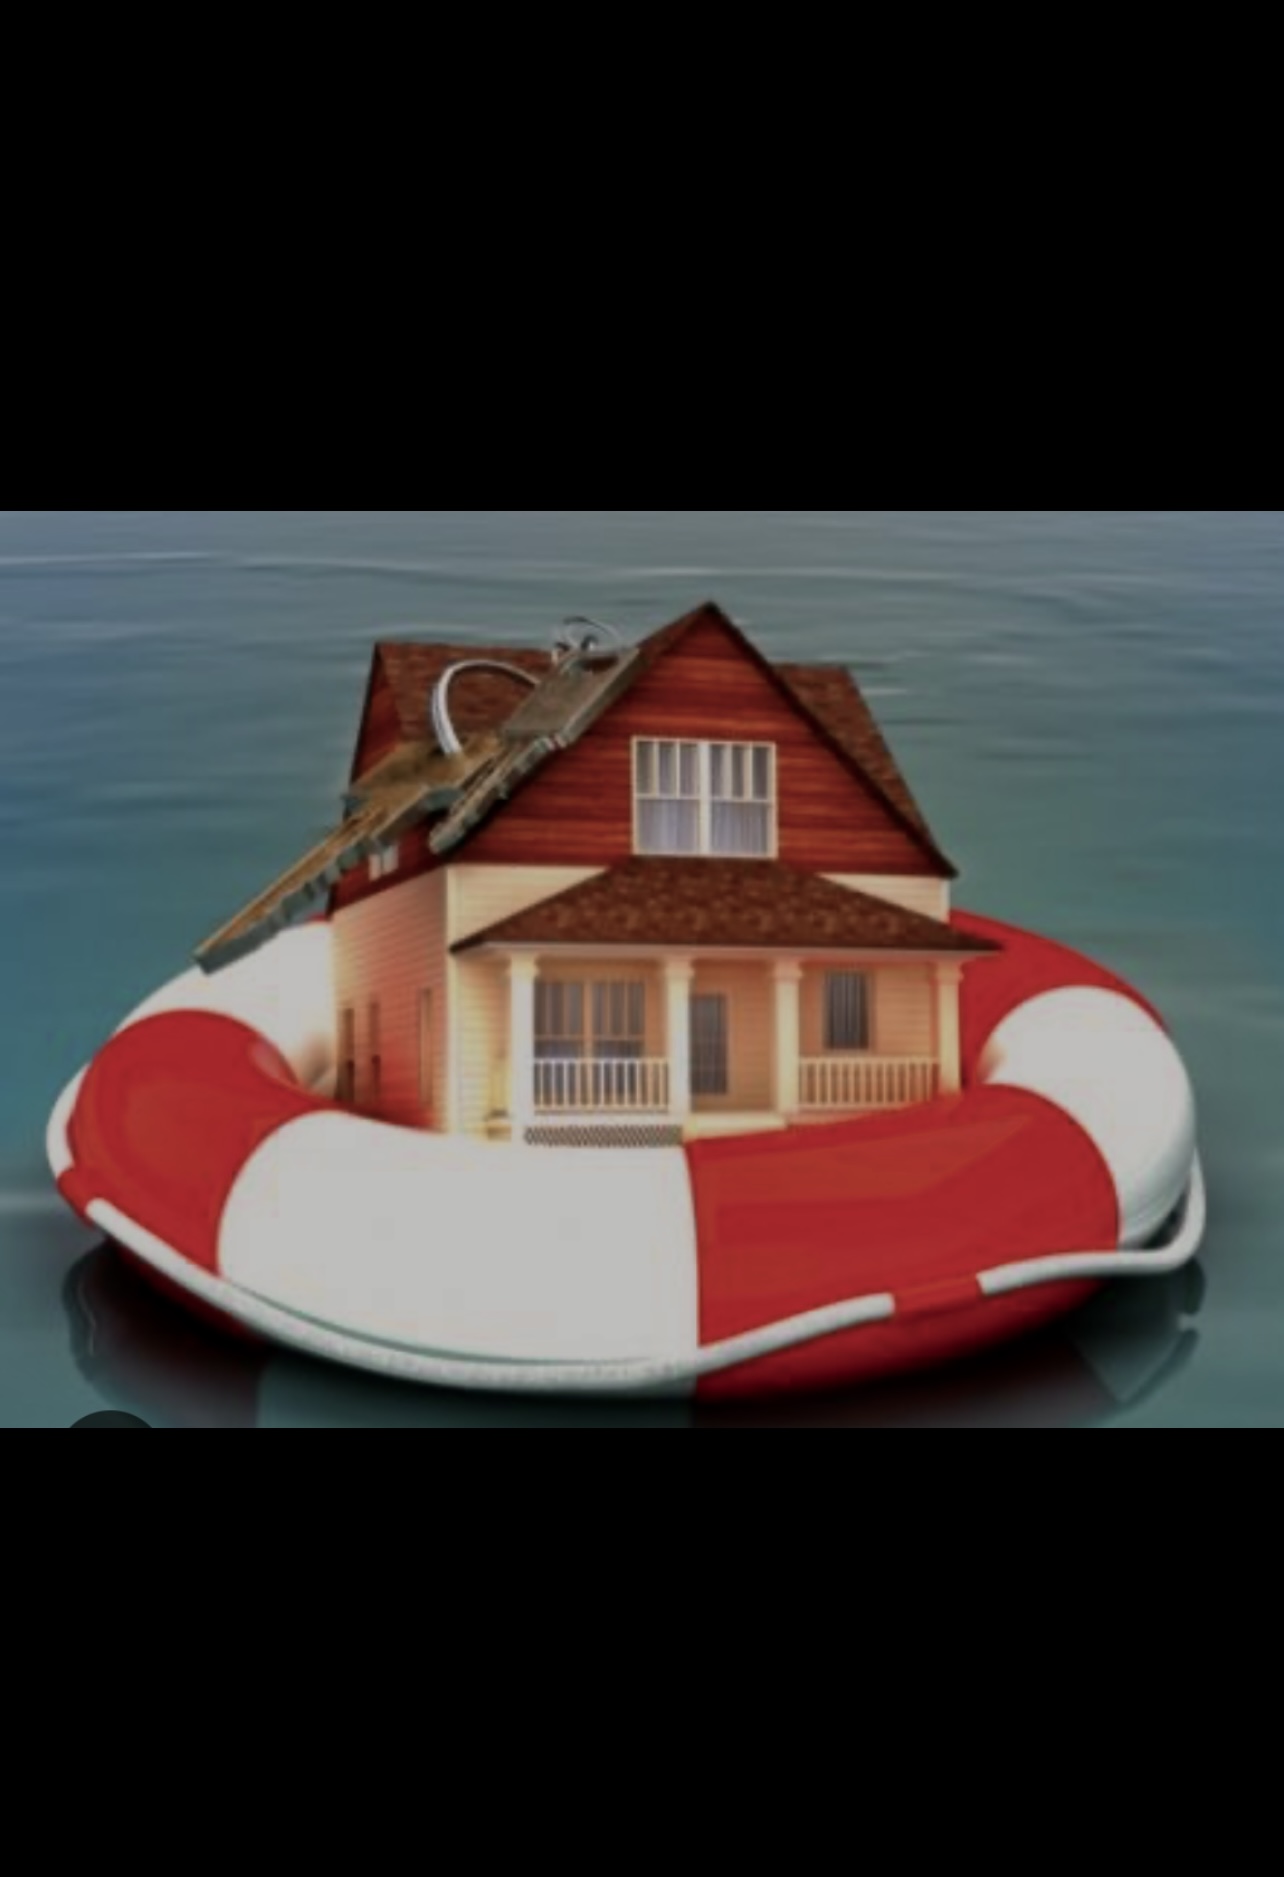 Une maison flottante dans l'eau avec une bouée de sauvetage.